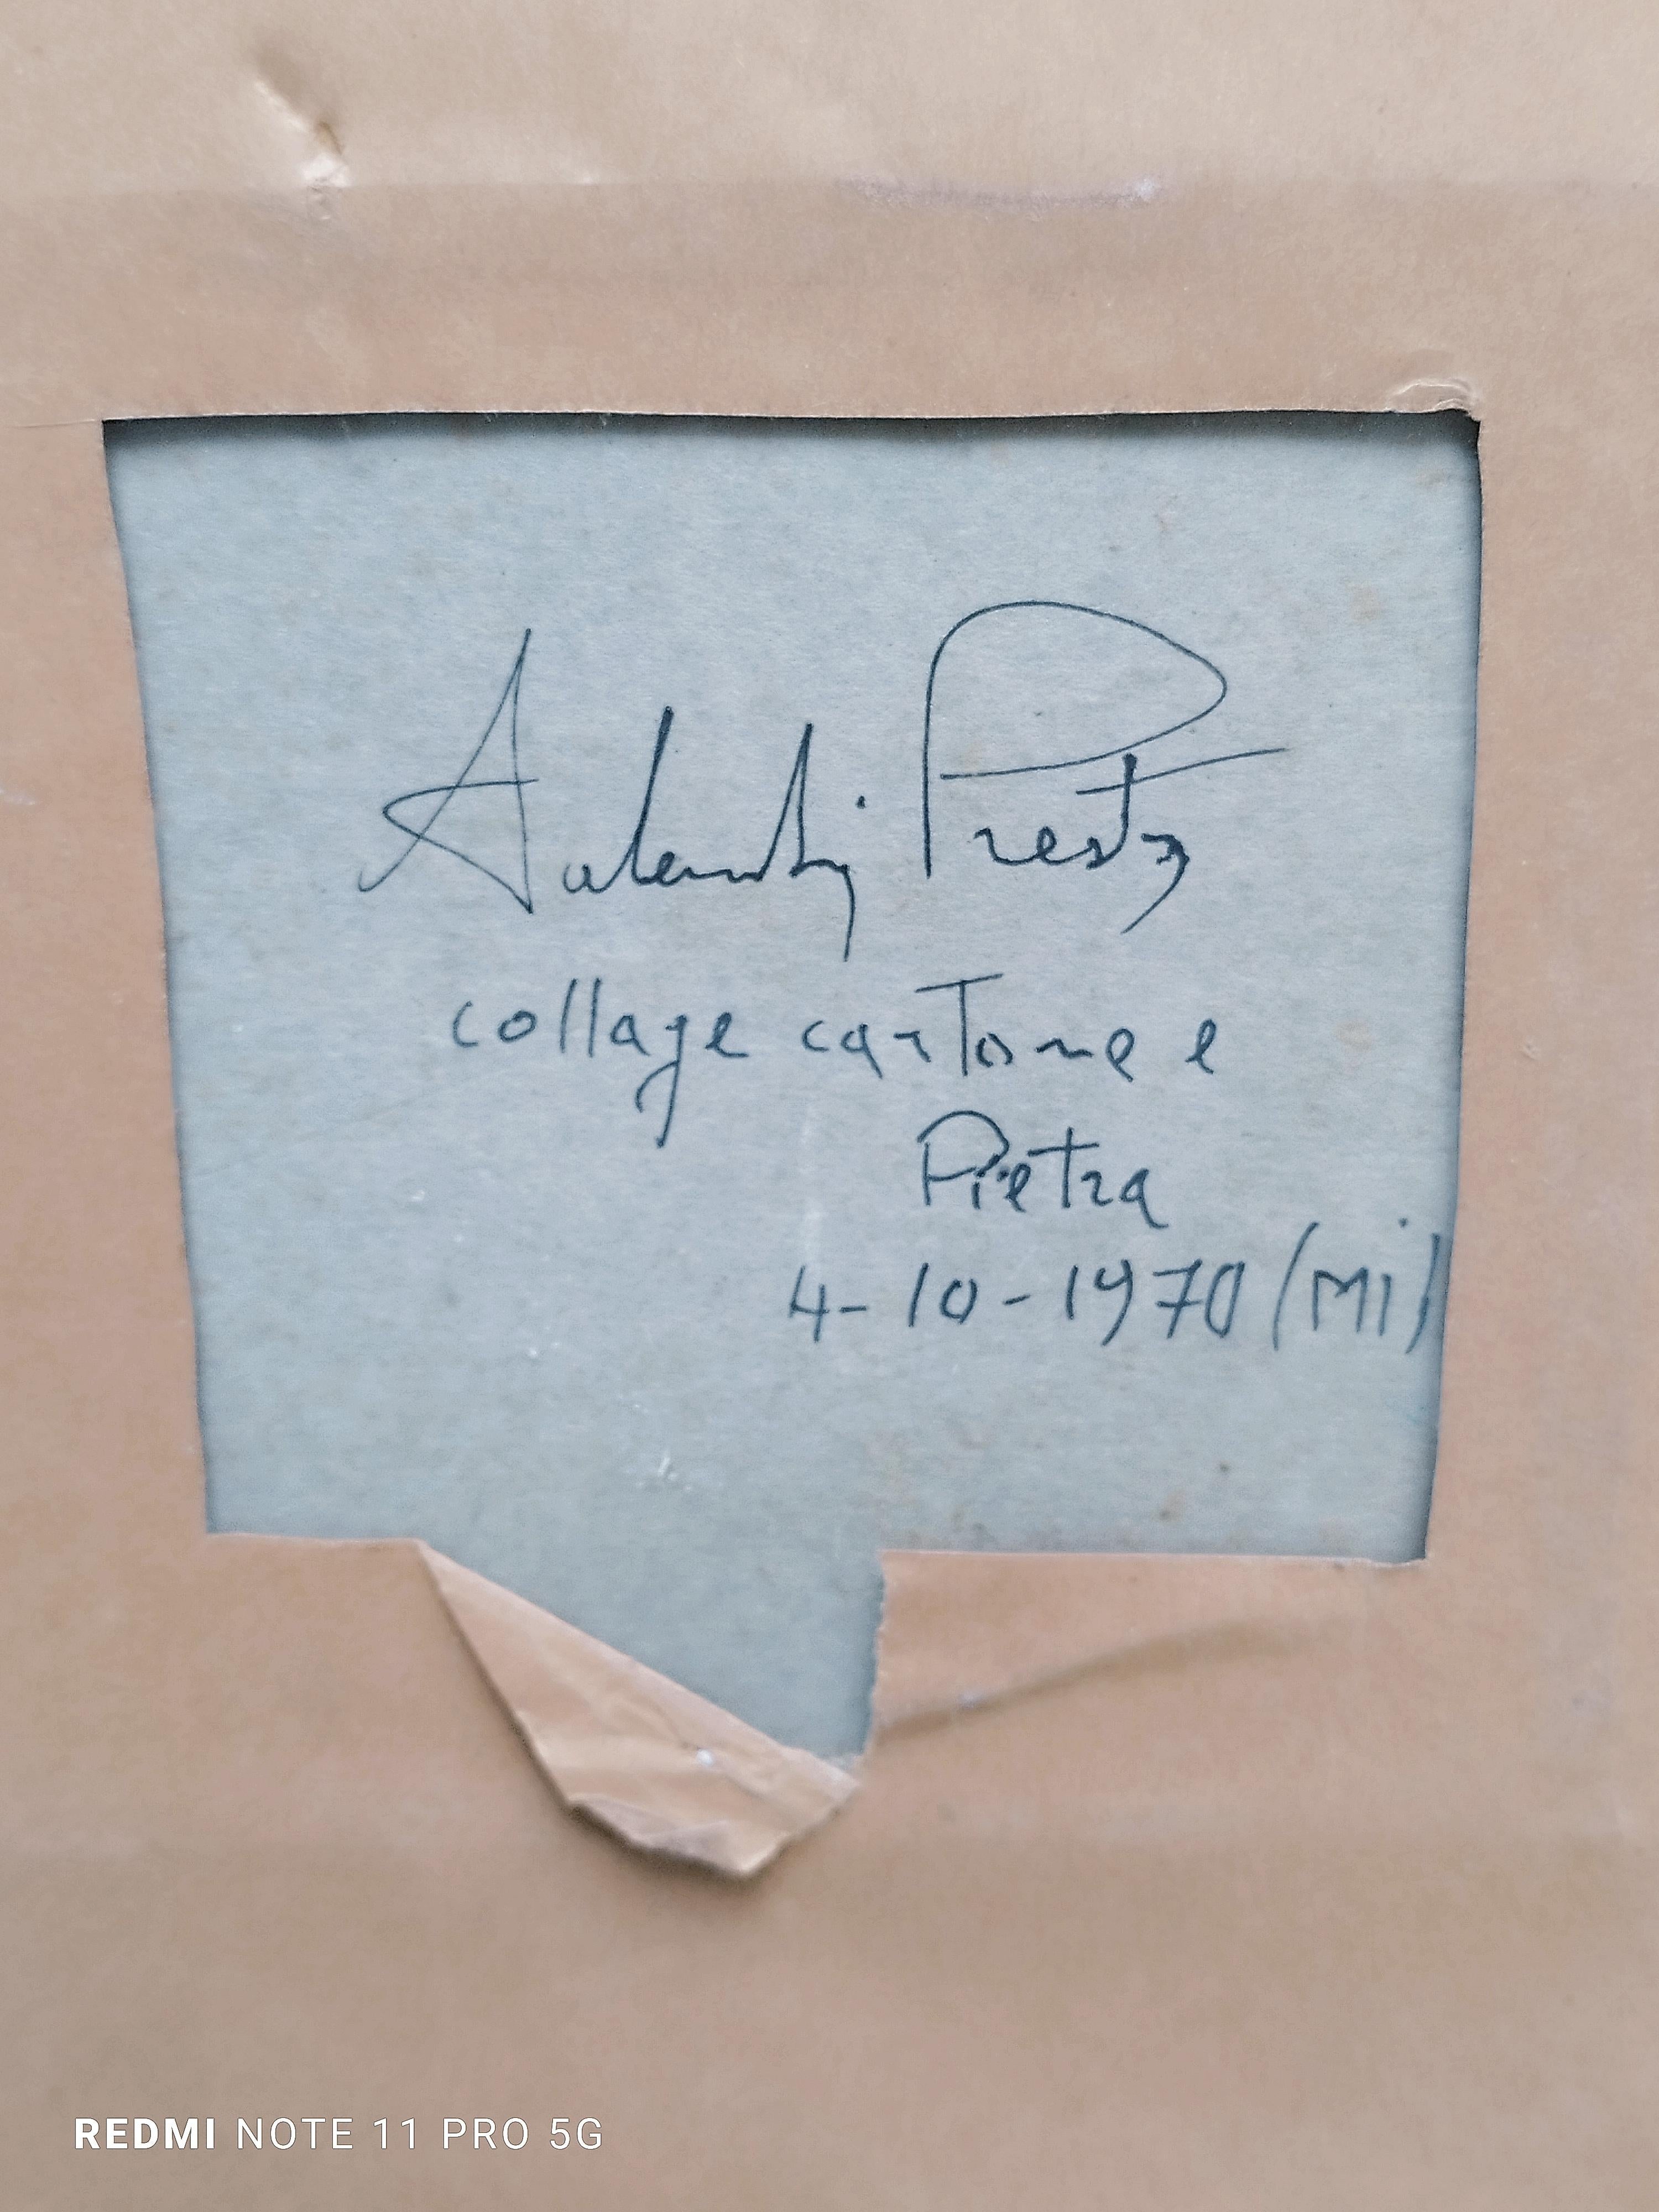 Stein ge Kleber auf Karton signiert und datiert auf der Rückseite, Presta 4-10-1970, mit reizvollen Rahmen